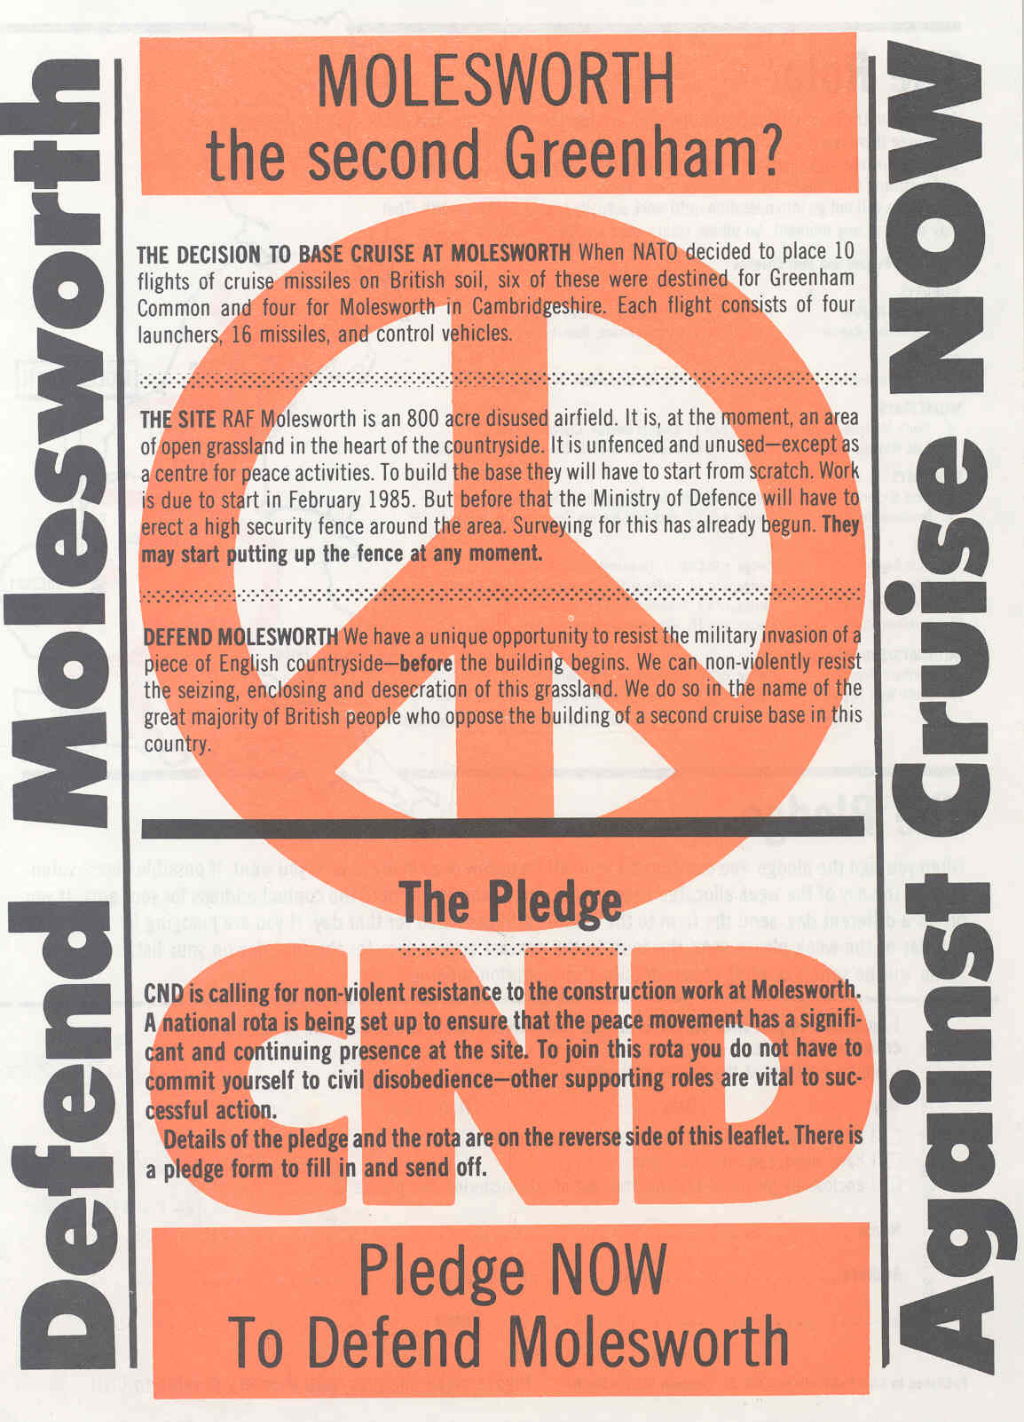 'Defend Molesworth against Cruise NOW', undated (c1985)